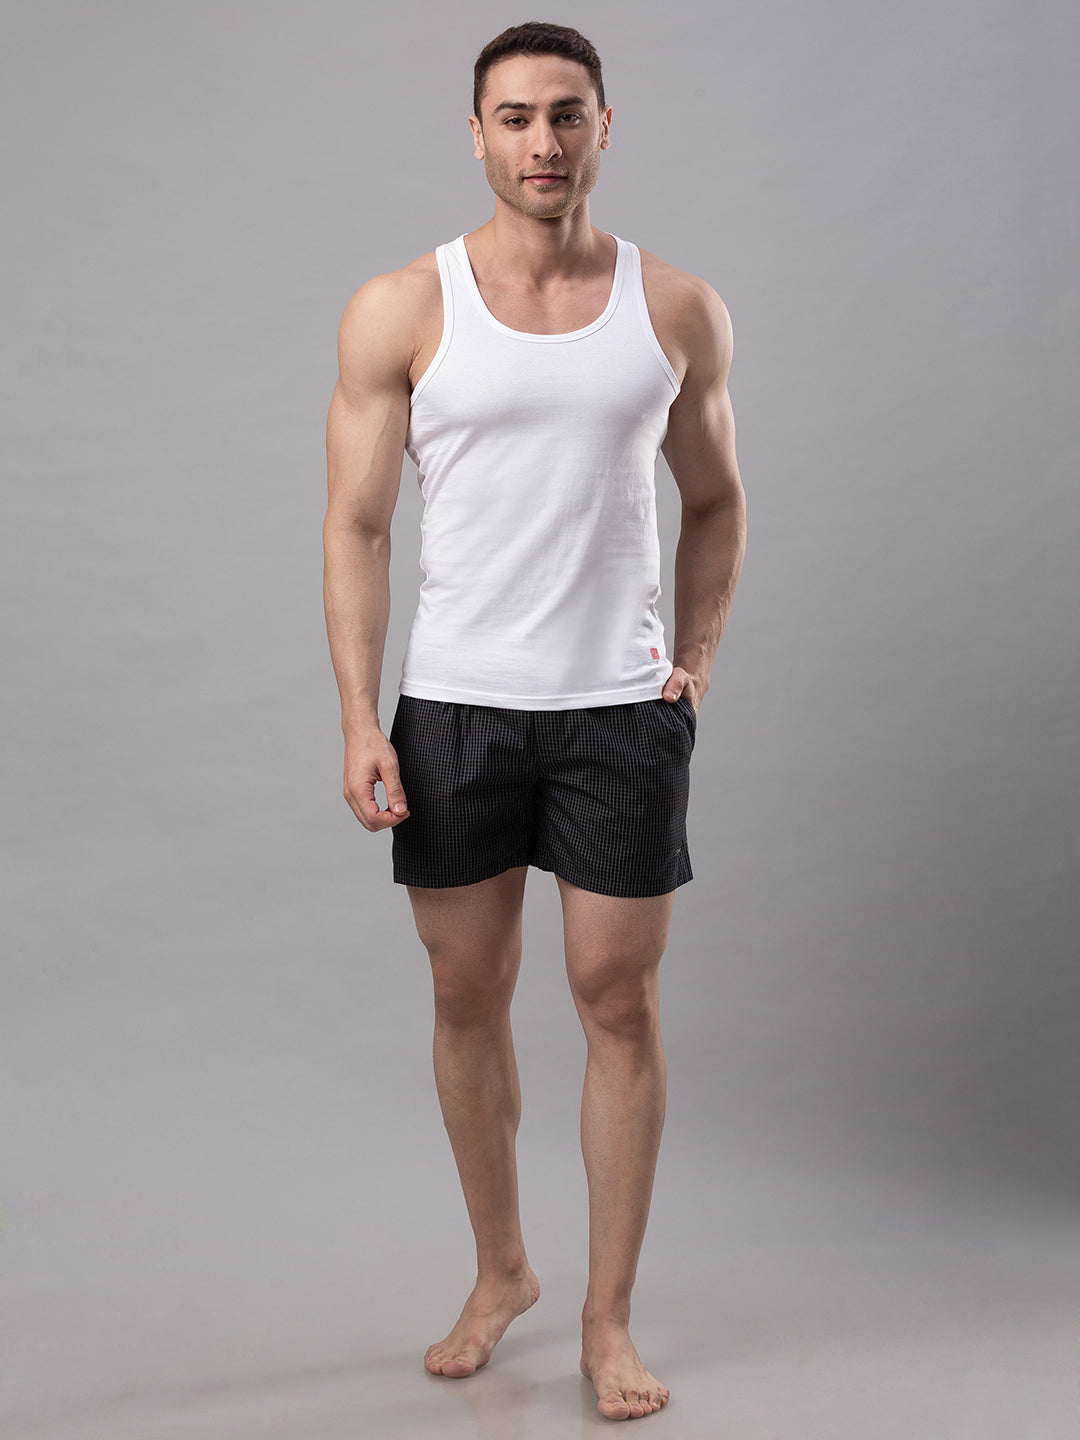 White 100% Cotton Vest (Round Neck)- UnderJeans by Spykar